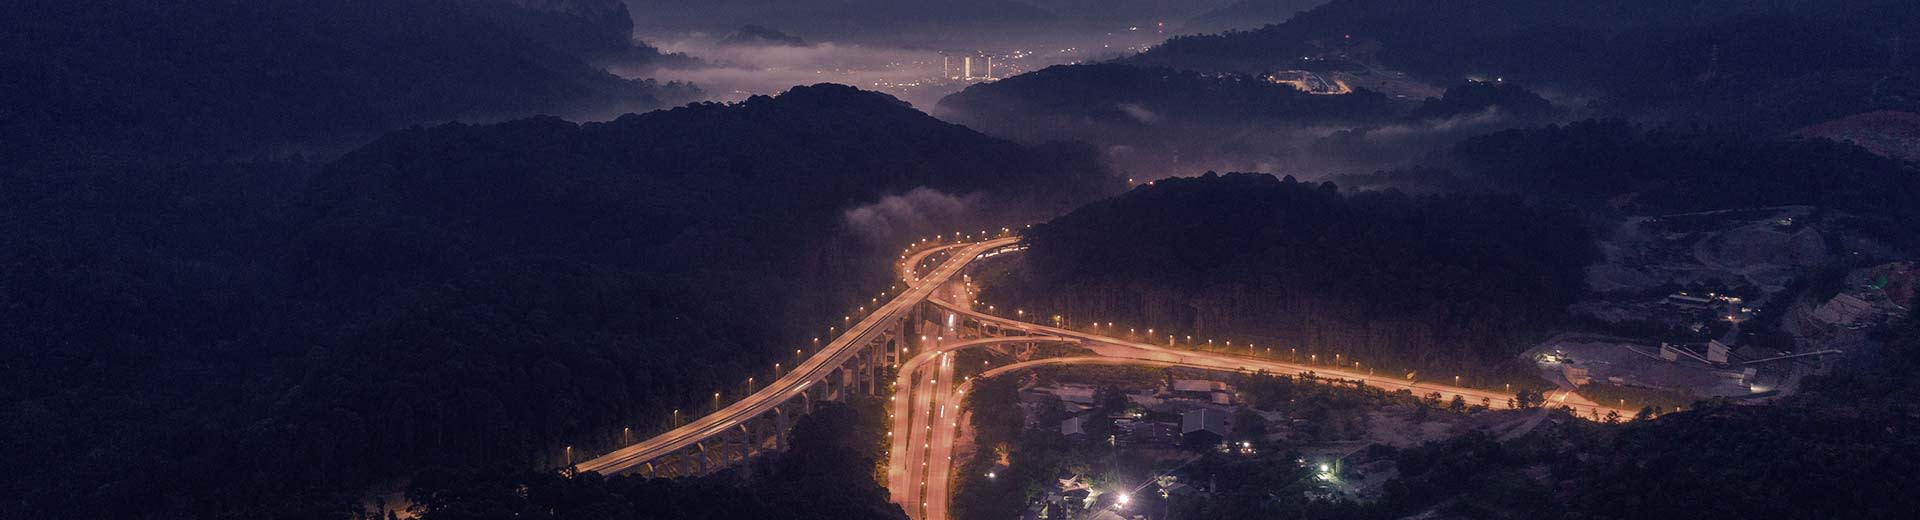 Les collines sombres font la montée sur une autoroute brillamment éclairée, avec les lumières de Rawang au loin.